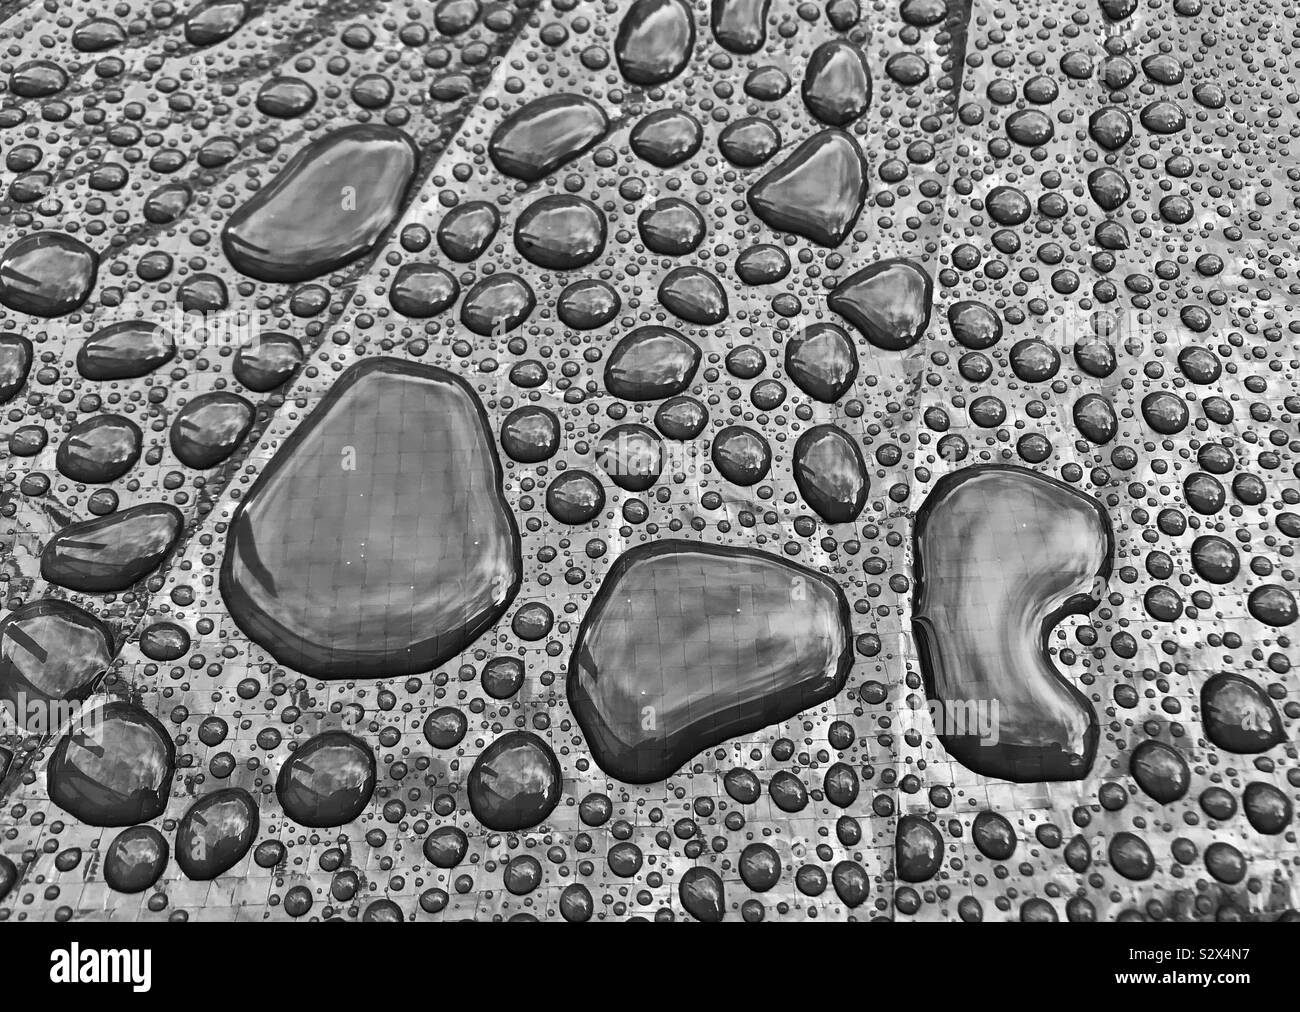 Globuli von Wasser auf einer glänzenden Oberfläche nach einem heftigen Regenschauer Stockfoto